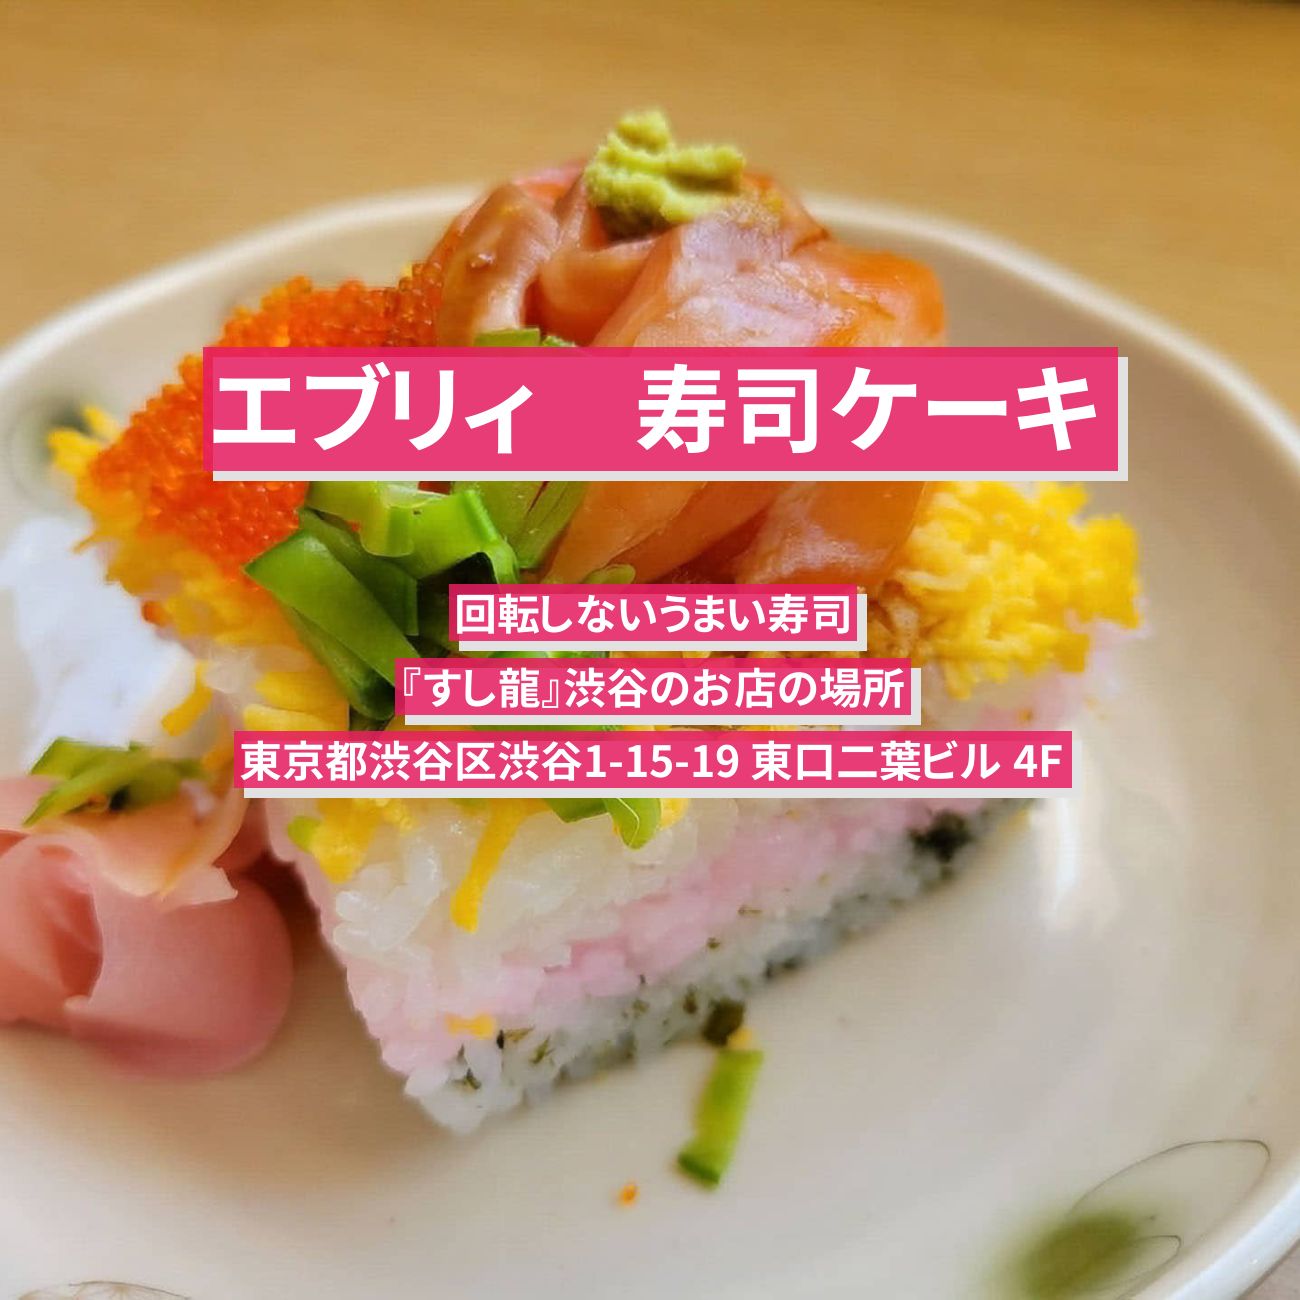 【エブリィ】寿司ケーキ『すし龍』渋谷のお店の場所〔every〕